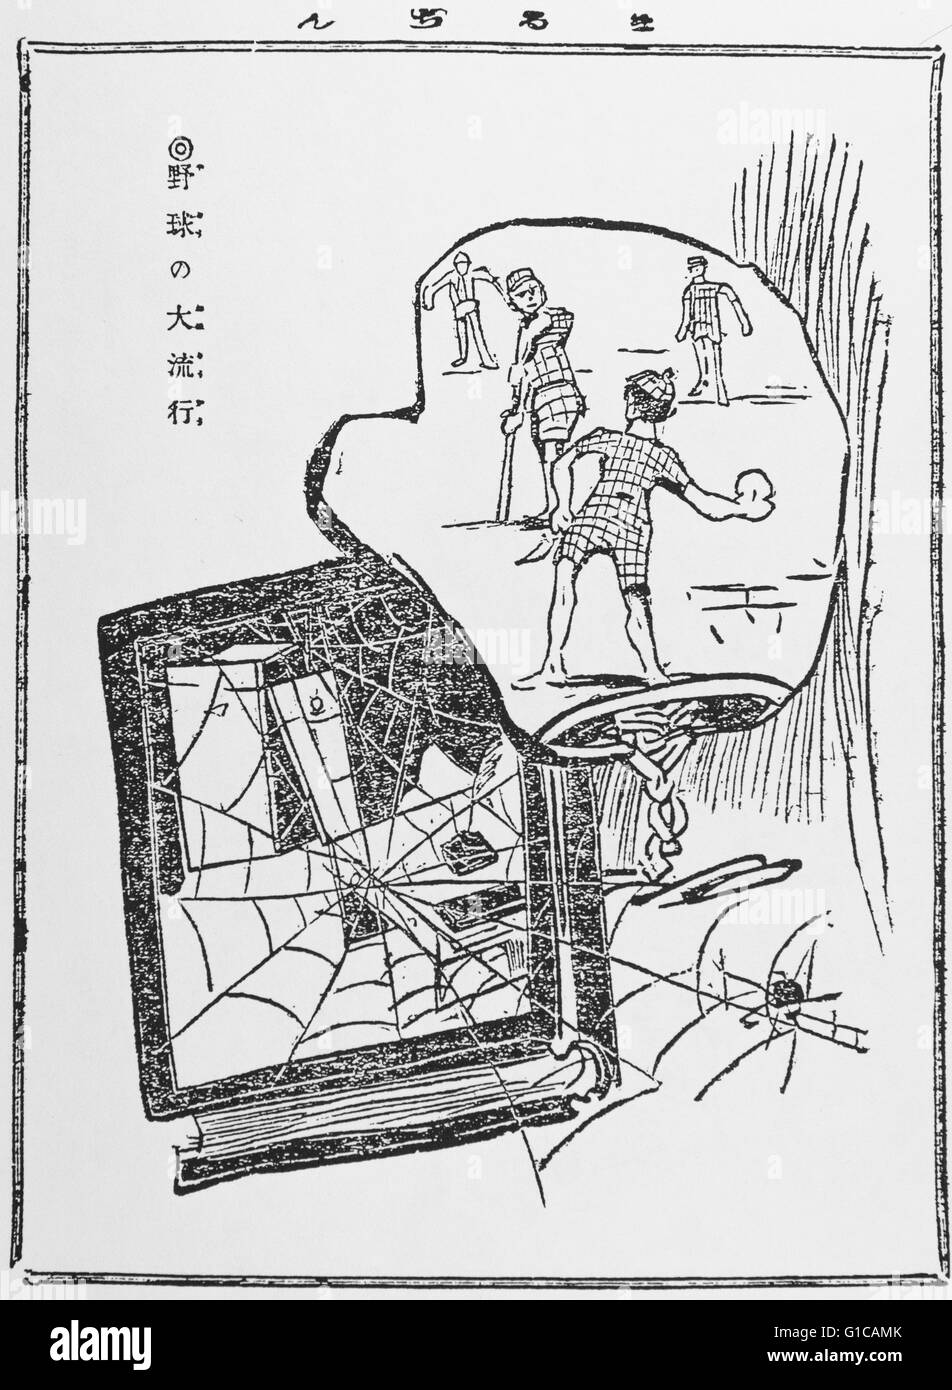 Il valore di FAD del baseball, pubblicato su Maru Maru Chimbun 5 maggio 1906 ( 1592 ). Il baseball aveva iniziato fin dal 1873 in Giappone. E divenne popolare. Questa caricatura satirizes studio è in fase di abbandono. Artista Hirafuku Hyakusui (28 dicembre 1887 - 30 ottobre 1933) Foto Stock